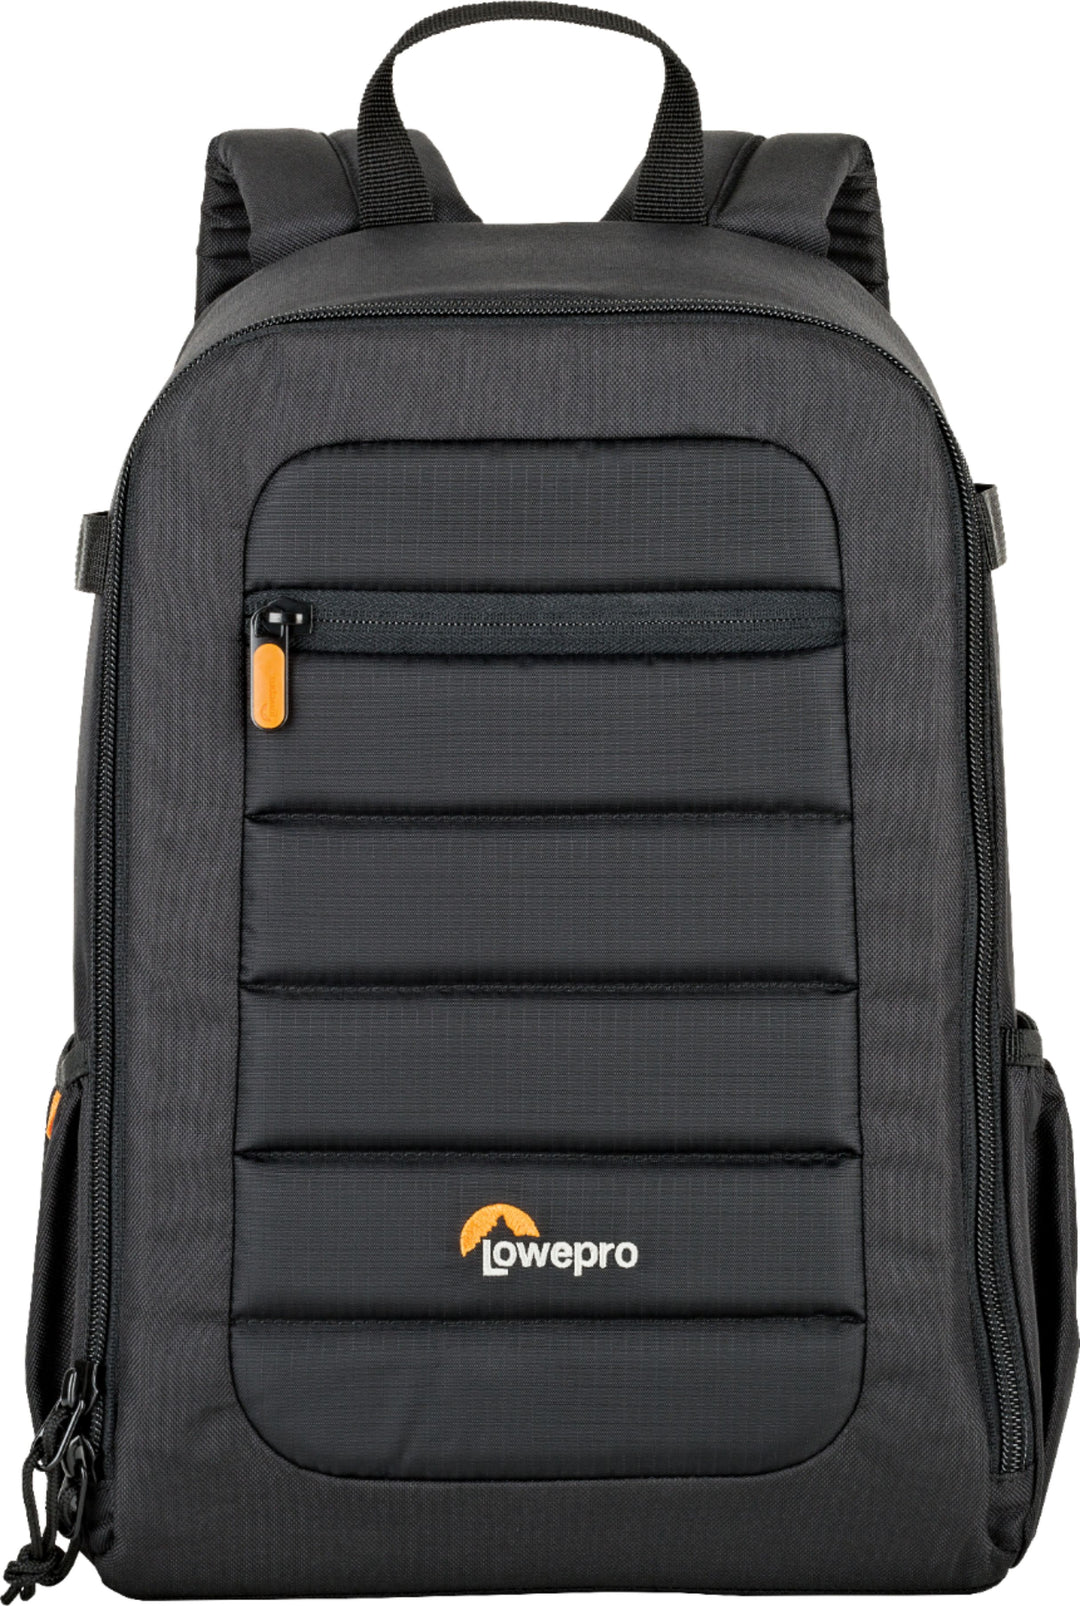 Lowepro - Tahoe Camera Backpack - Black_2